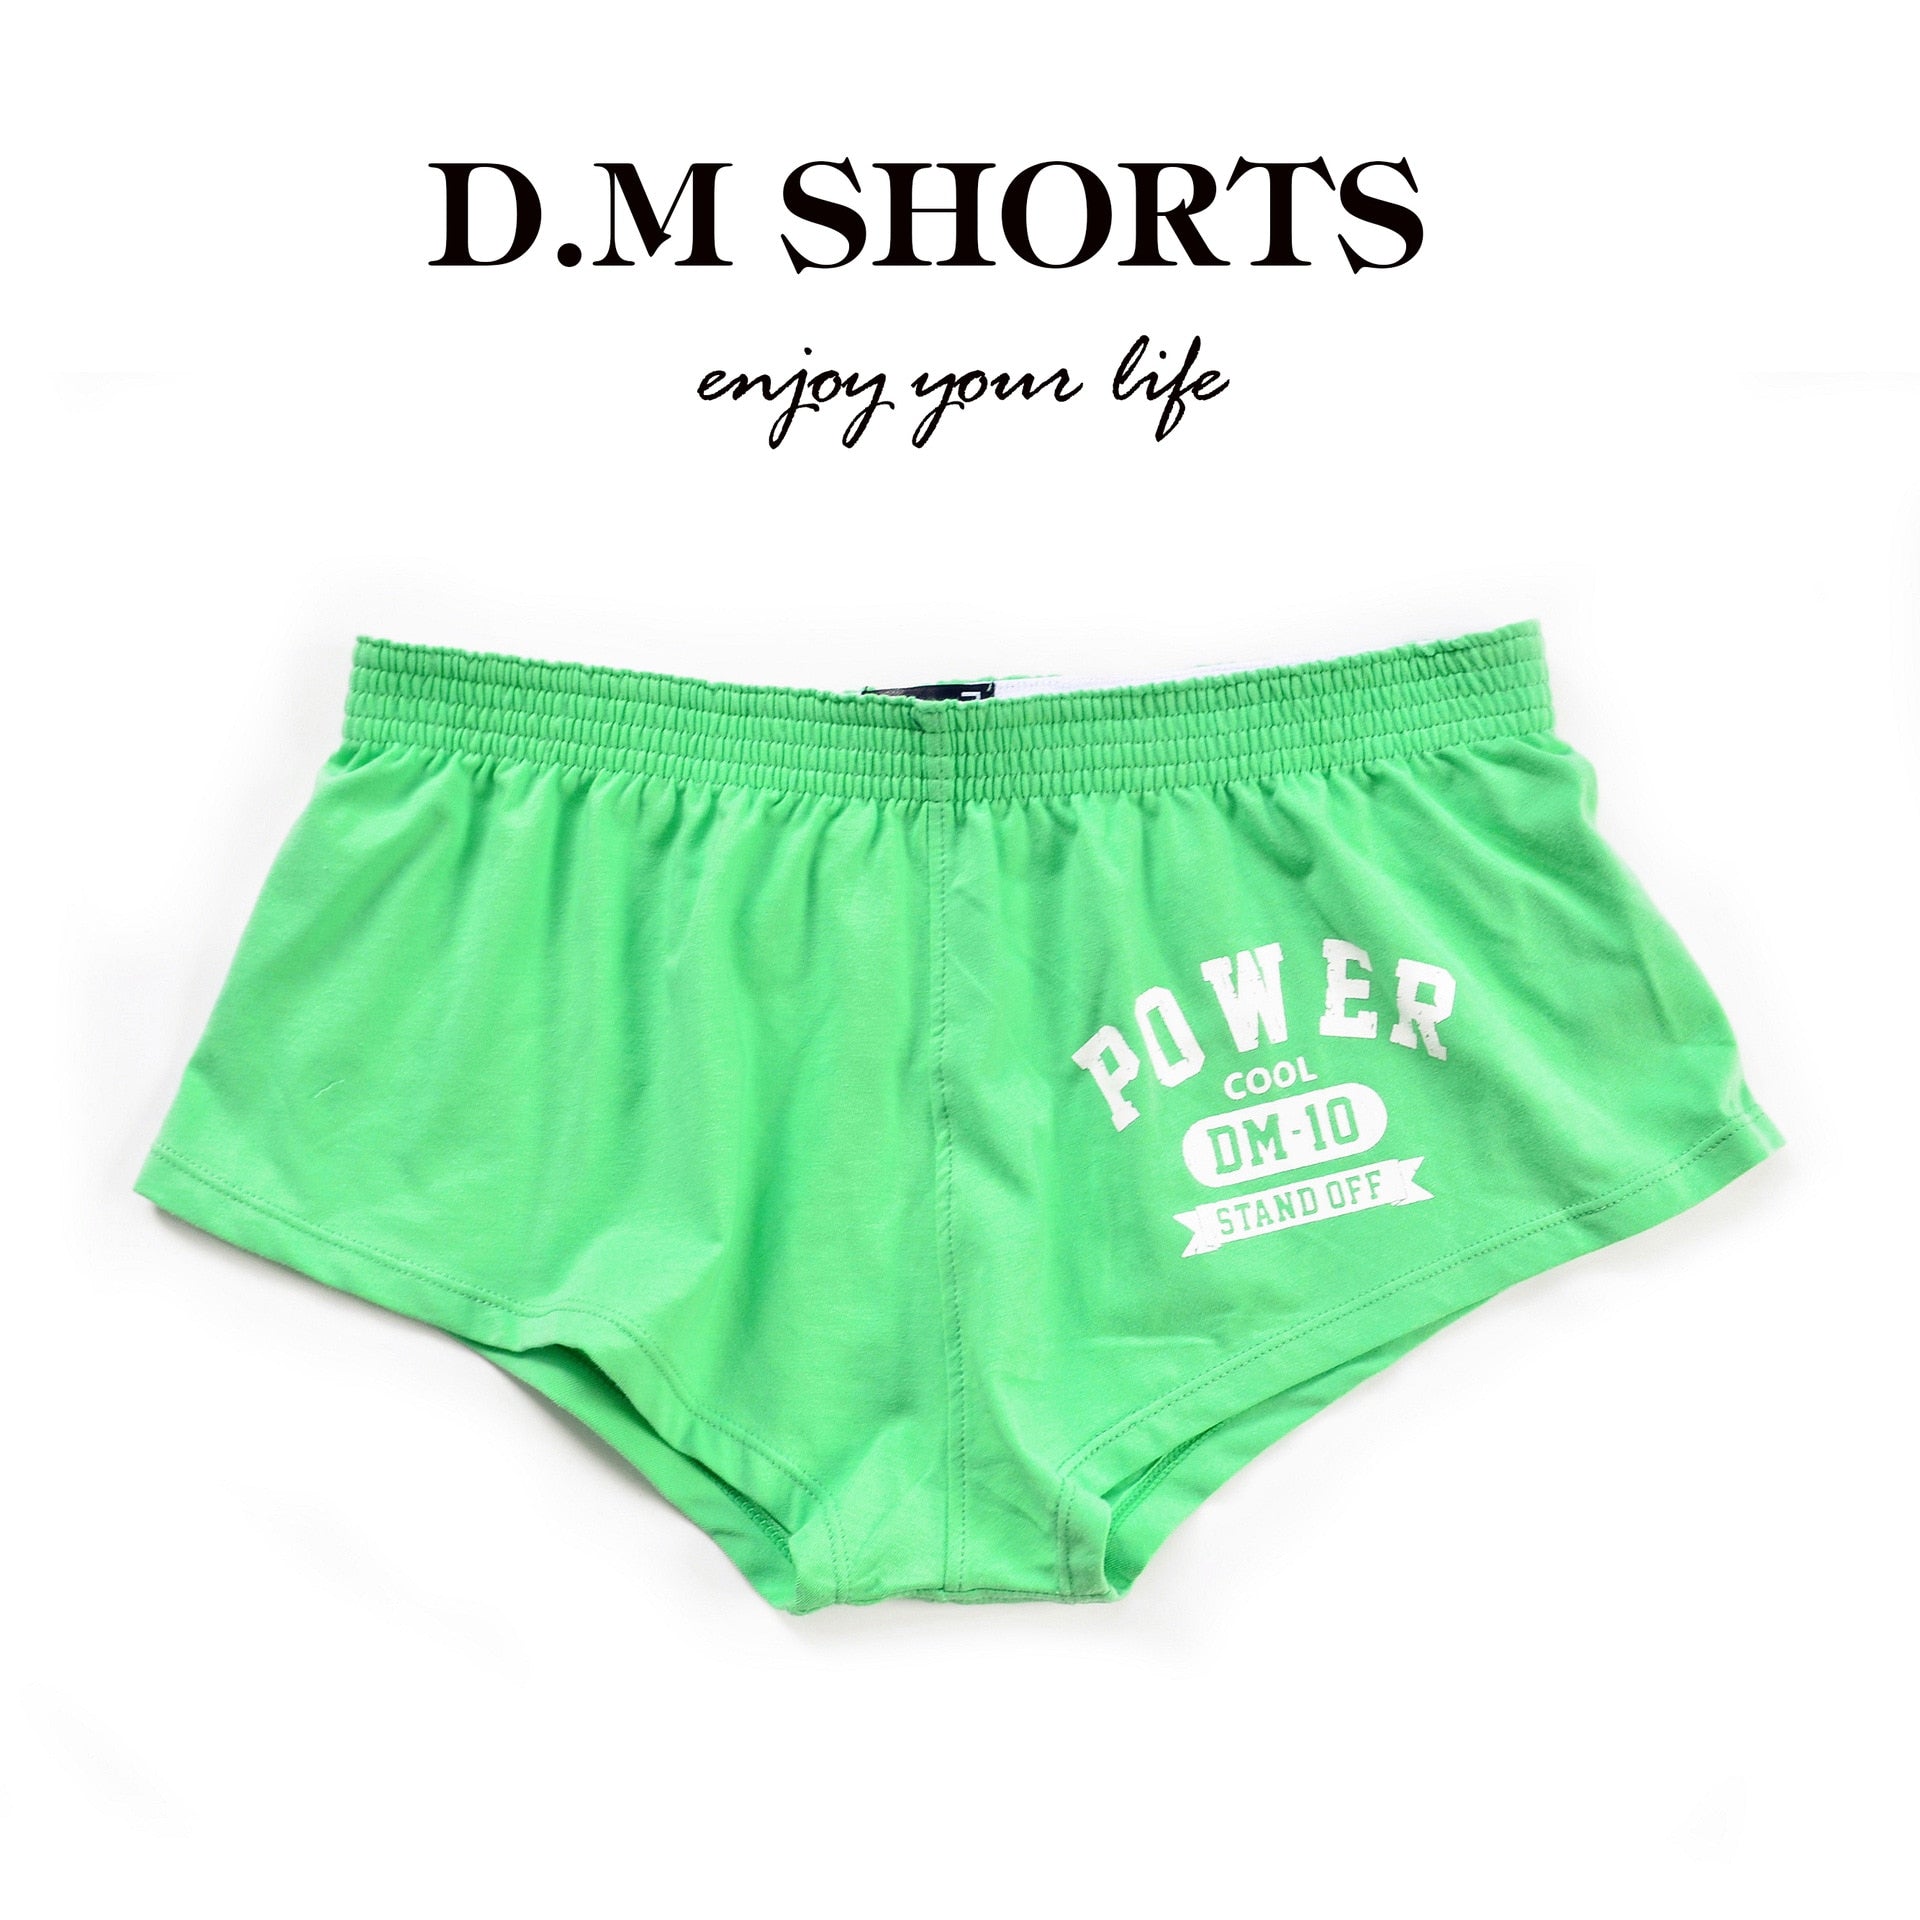 DM PWR Shorts